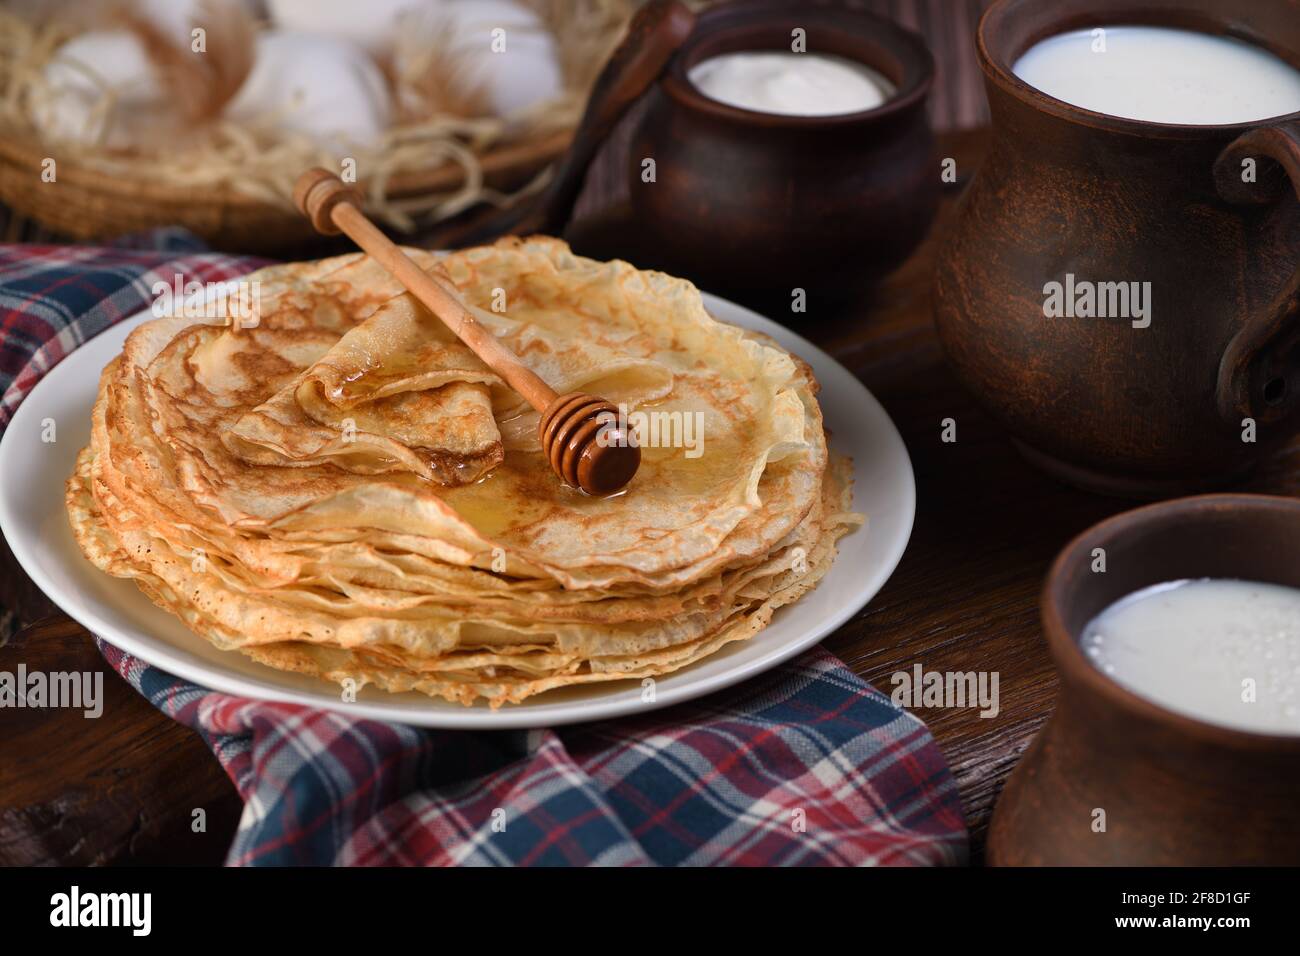 Hausgemachte dünne Pfannkuchen mit Honig, gestapelt in einem Stapel, auf  einem Holztisch mit einem Becher Milch, einem Topf mit saurer Rahm und  Eiern in einem Korb. Traditionell Slawisch Stockfotografie - Alamy